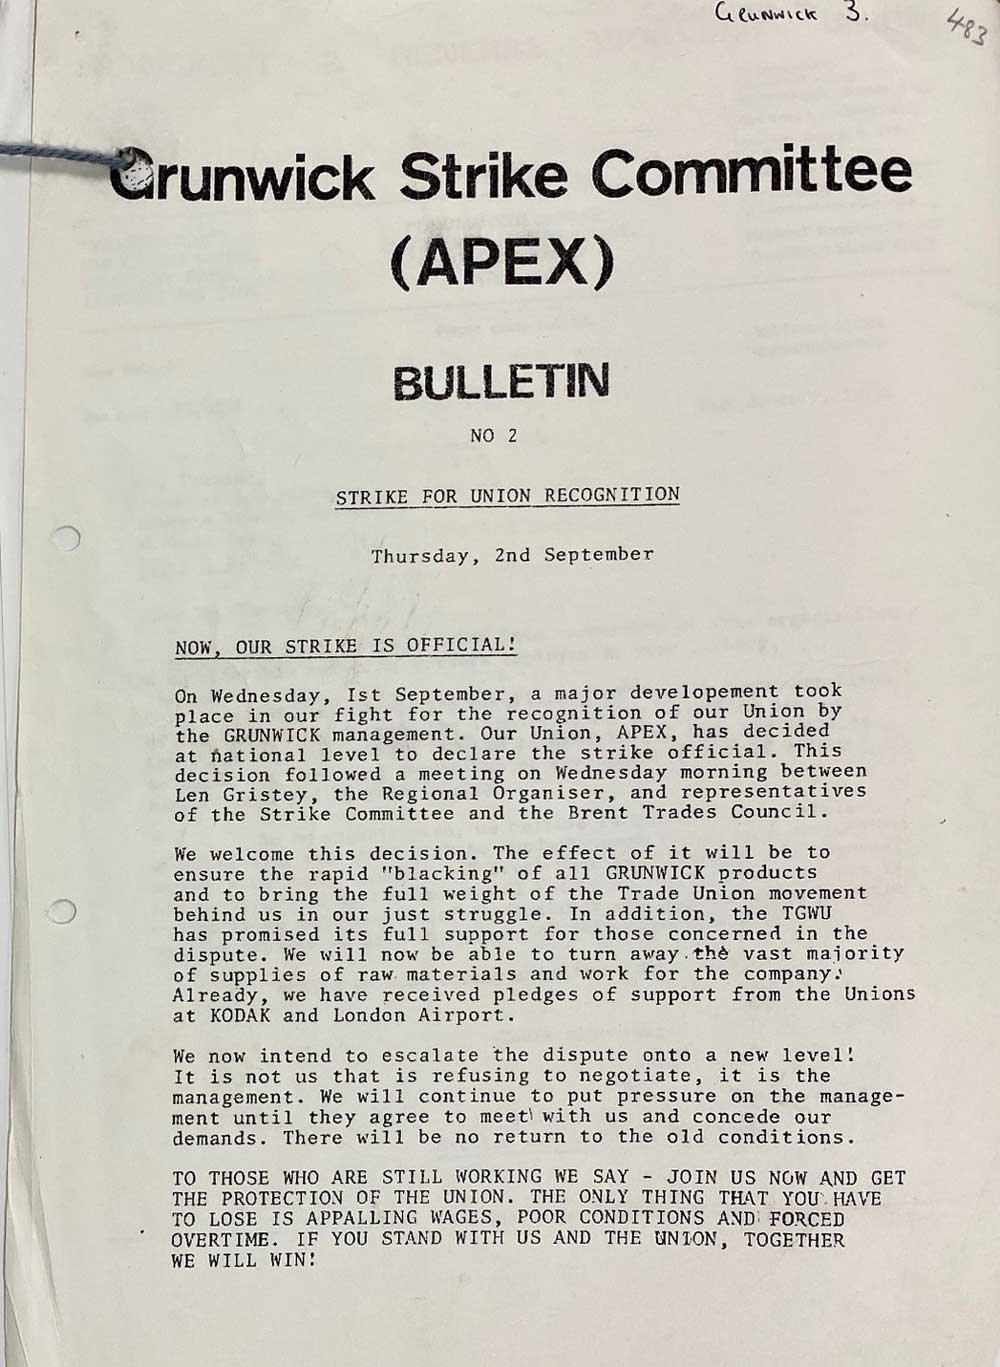 Printed document headed 'Grunwick Strike Committee (APEX)'.